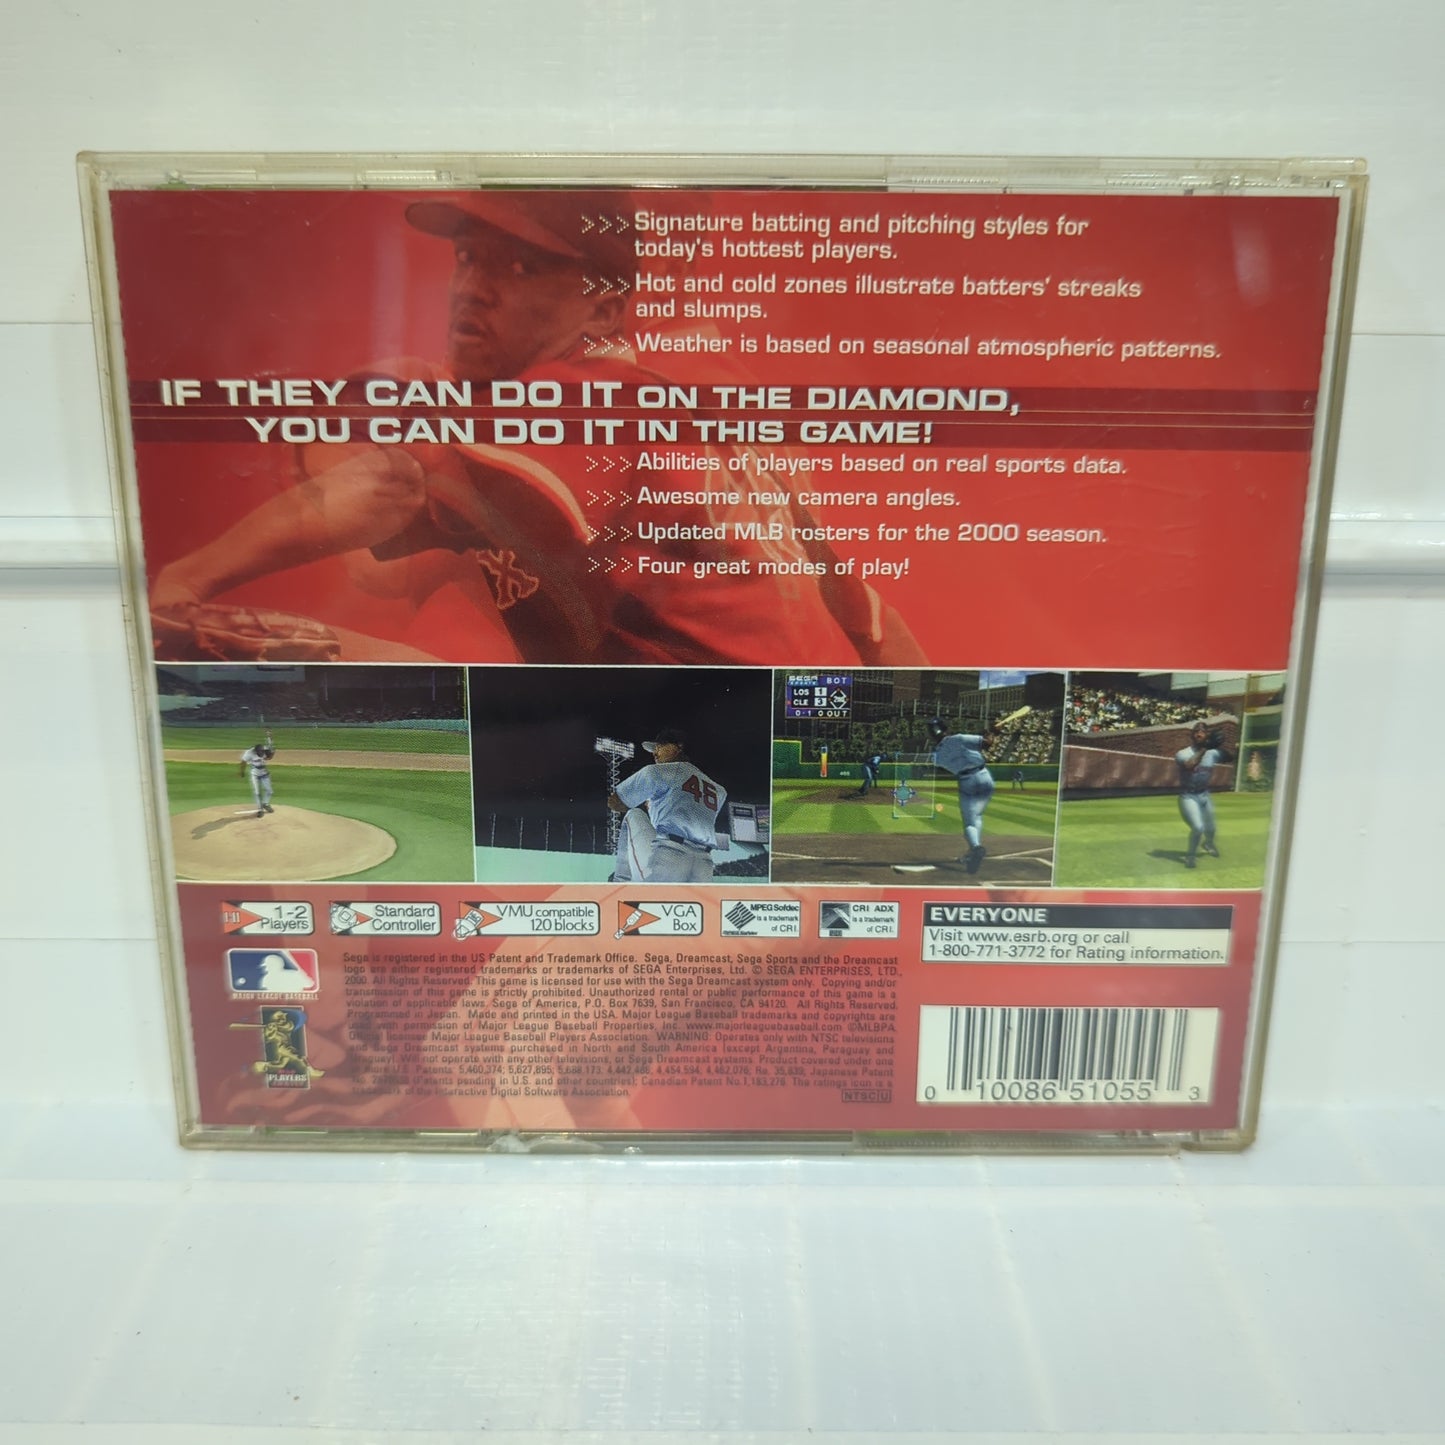 World Series Baseball 2K1 - Sega Dreamcast